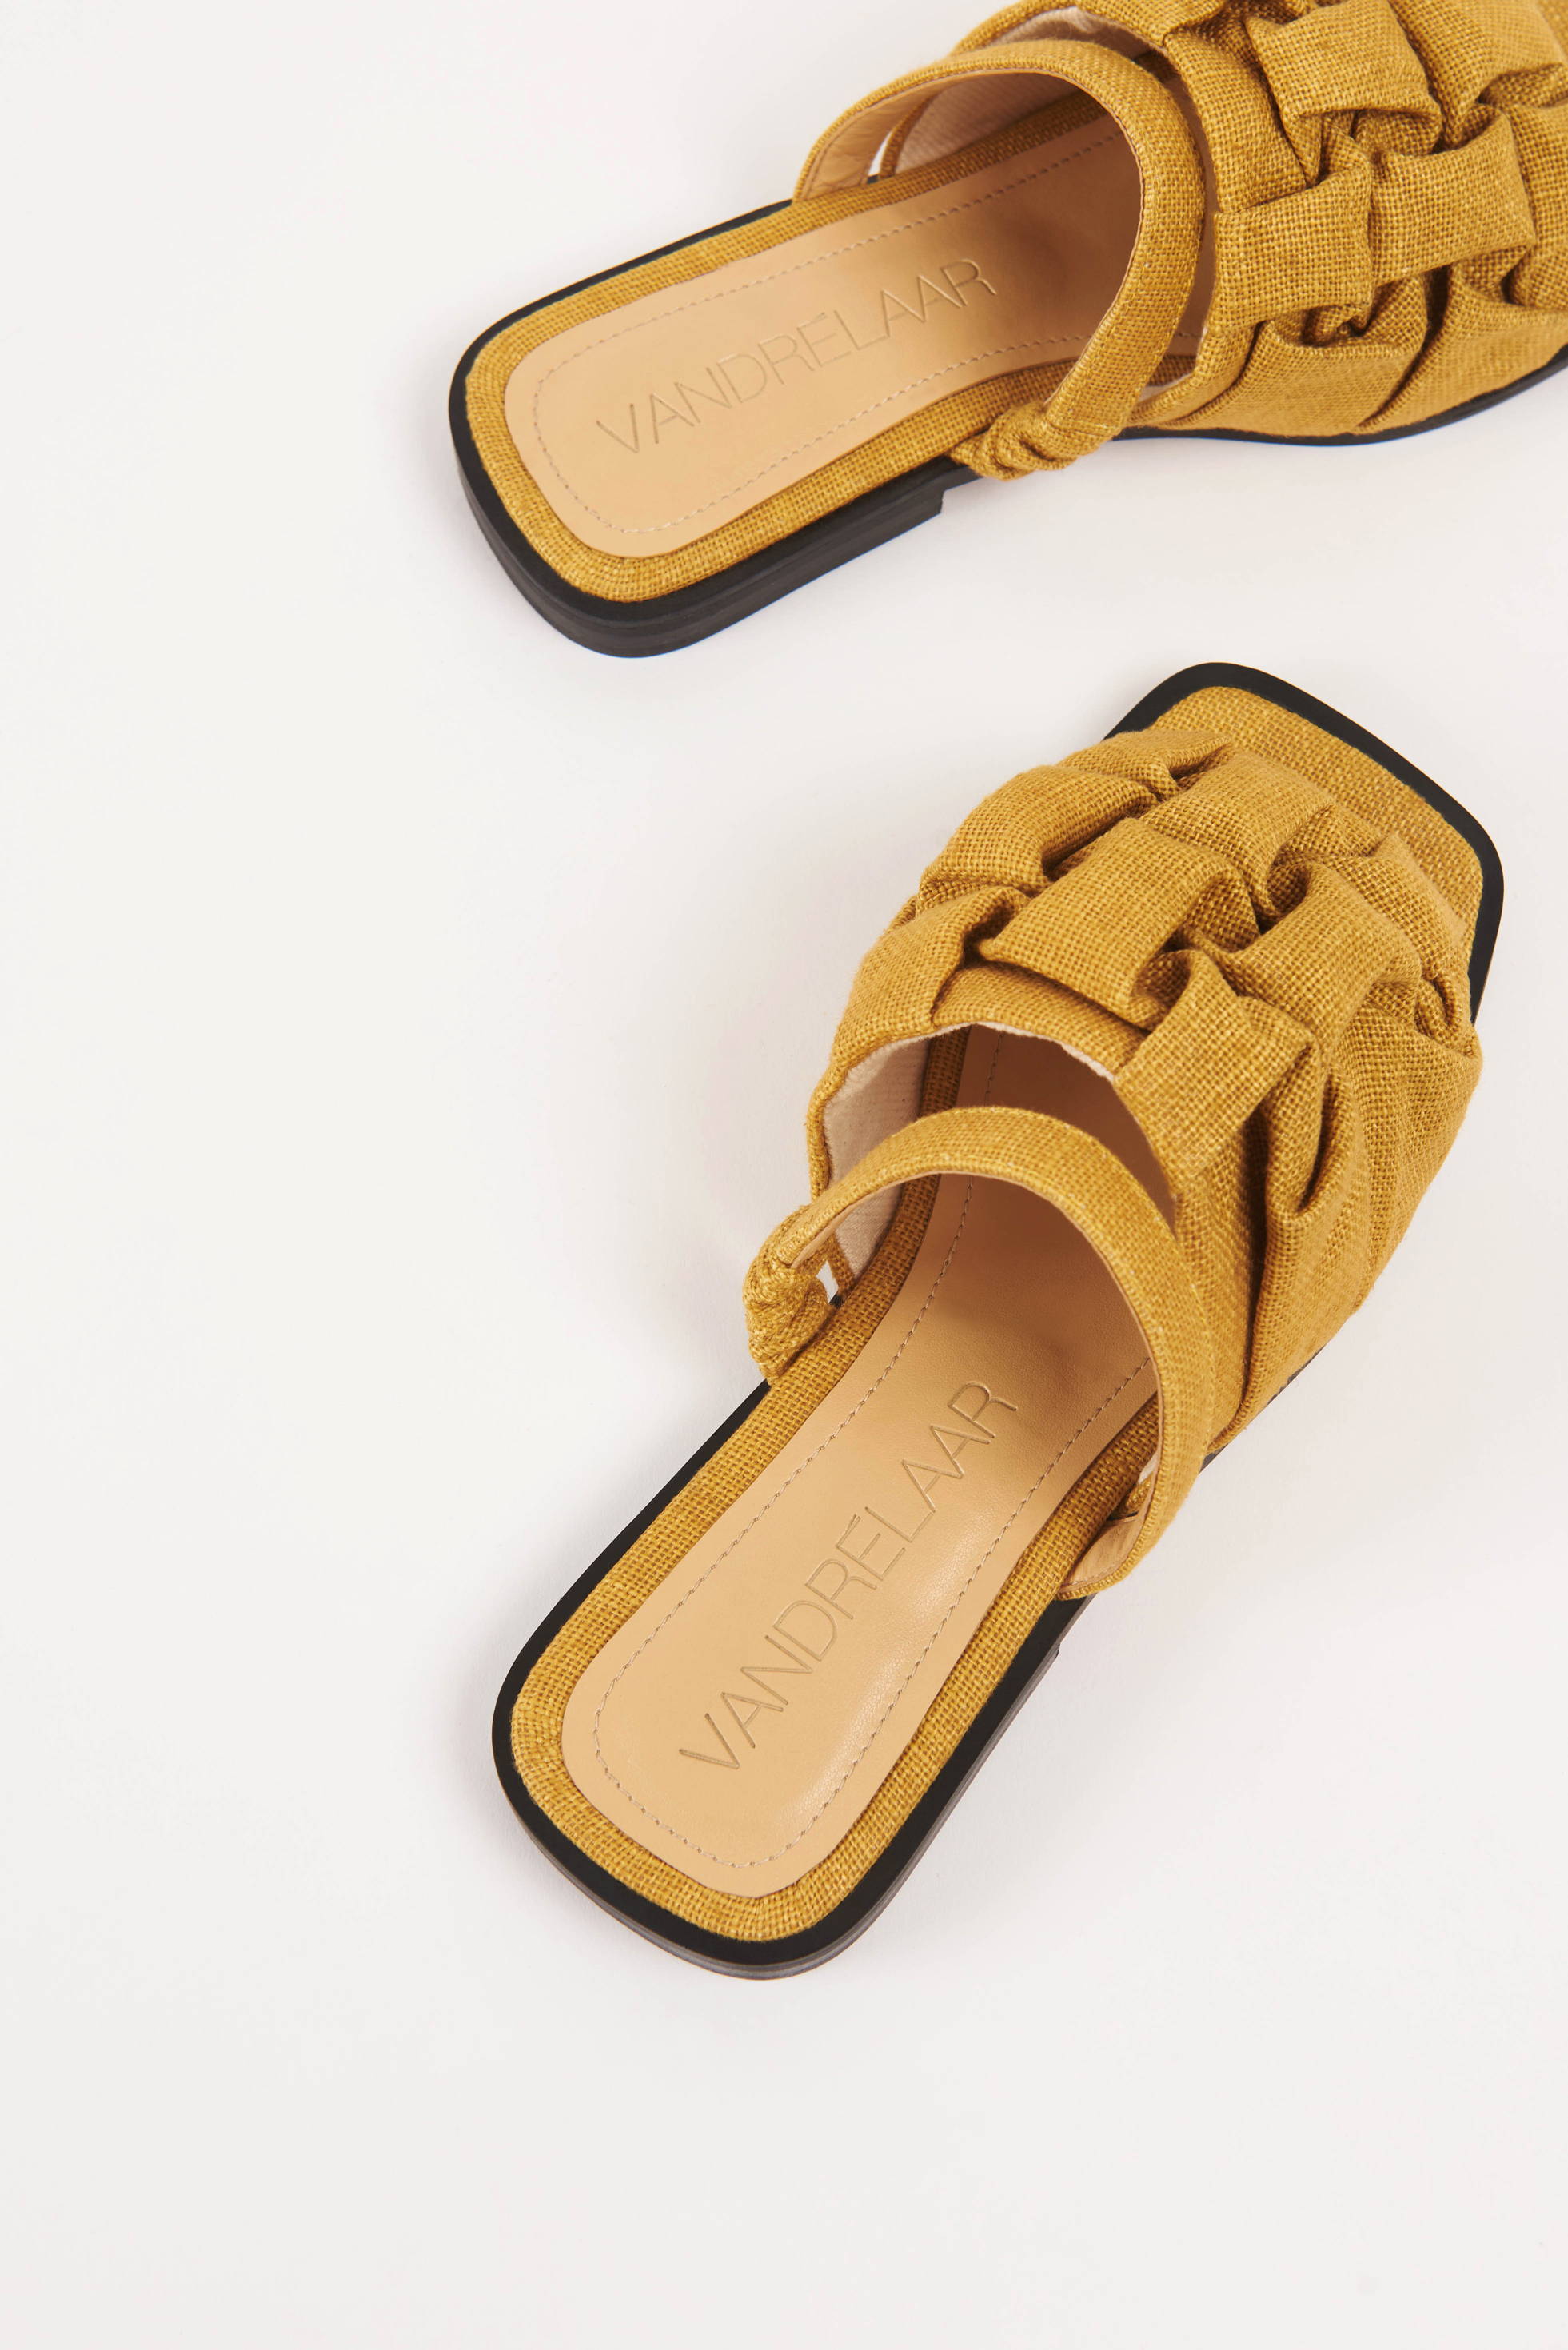 Pair of Vandrelaar vegan Simone sandals in mustard yellow linen